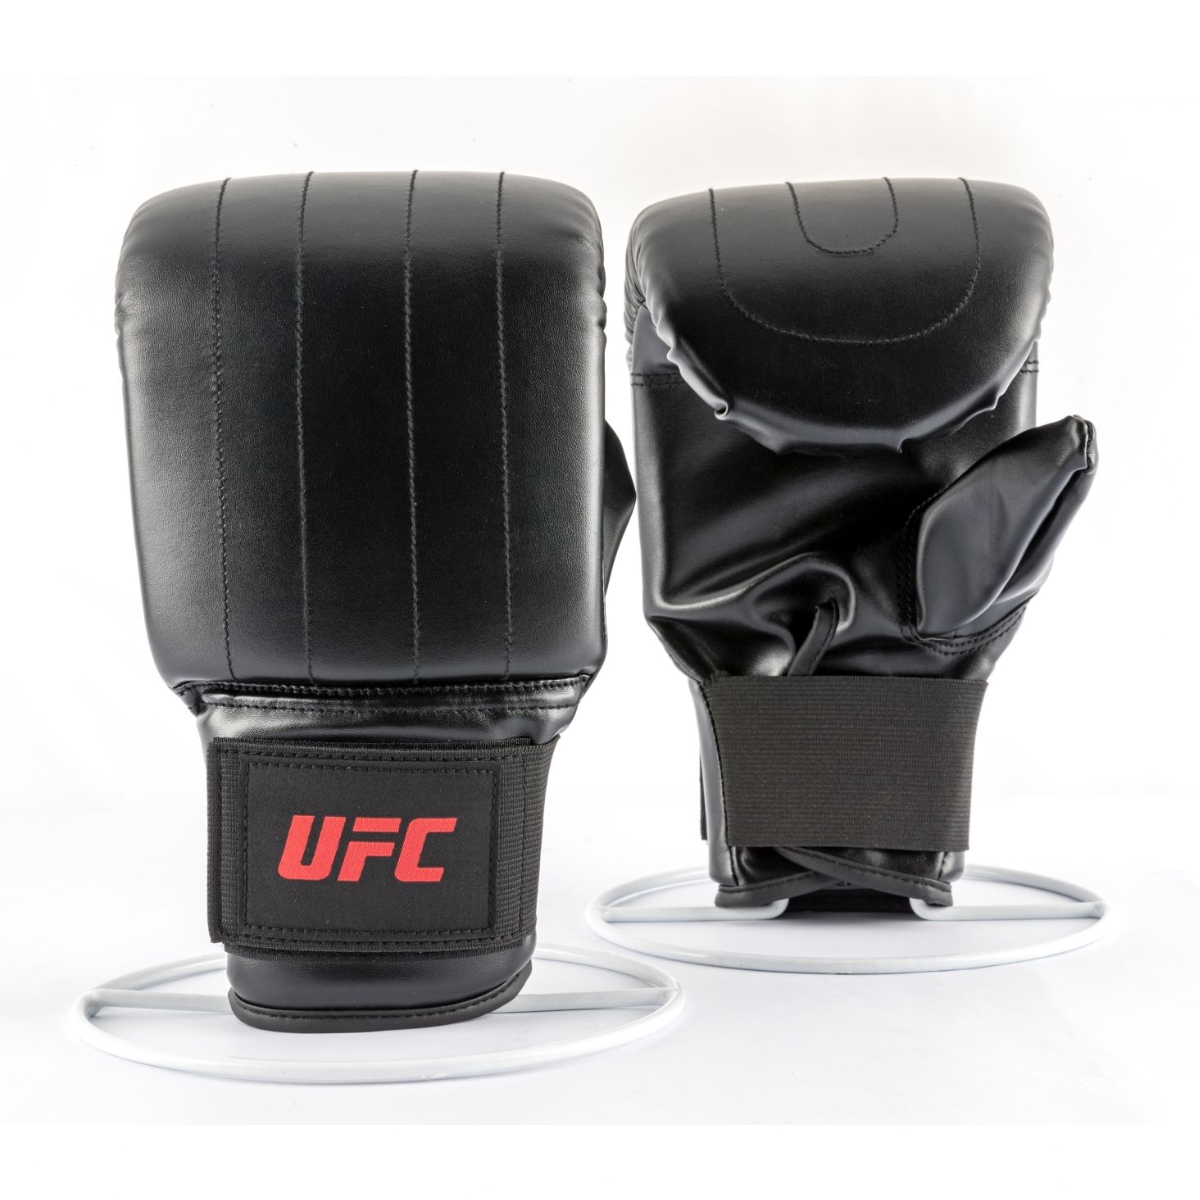 Brug UFC Bag Gloves - str. S til en forbedret oplevelse